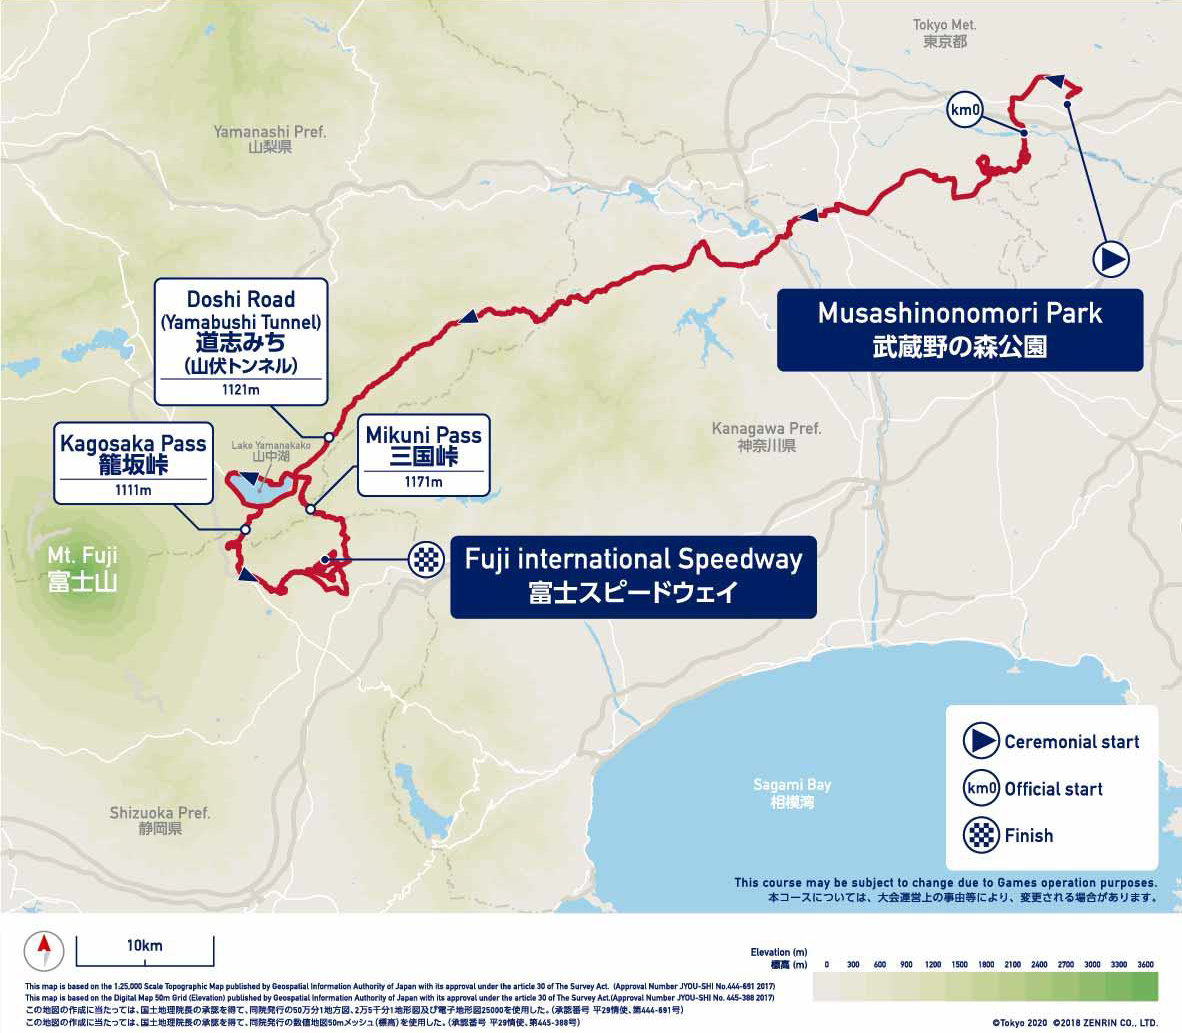 Streckenverlauf Tokyo 2020 Test Event 2019